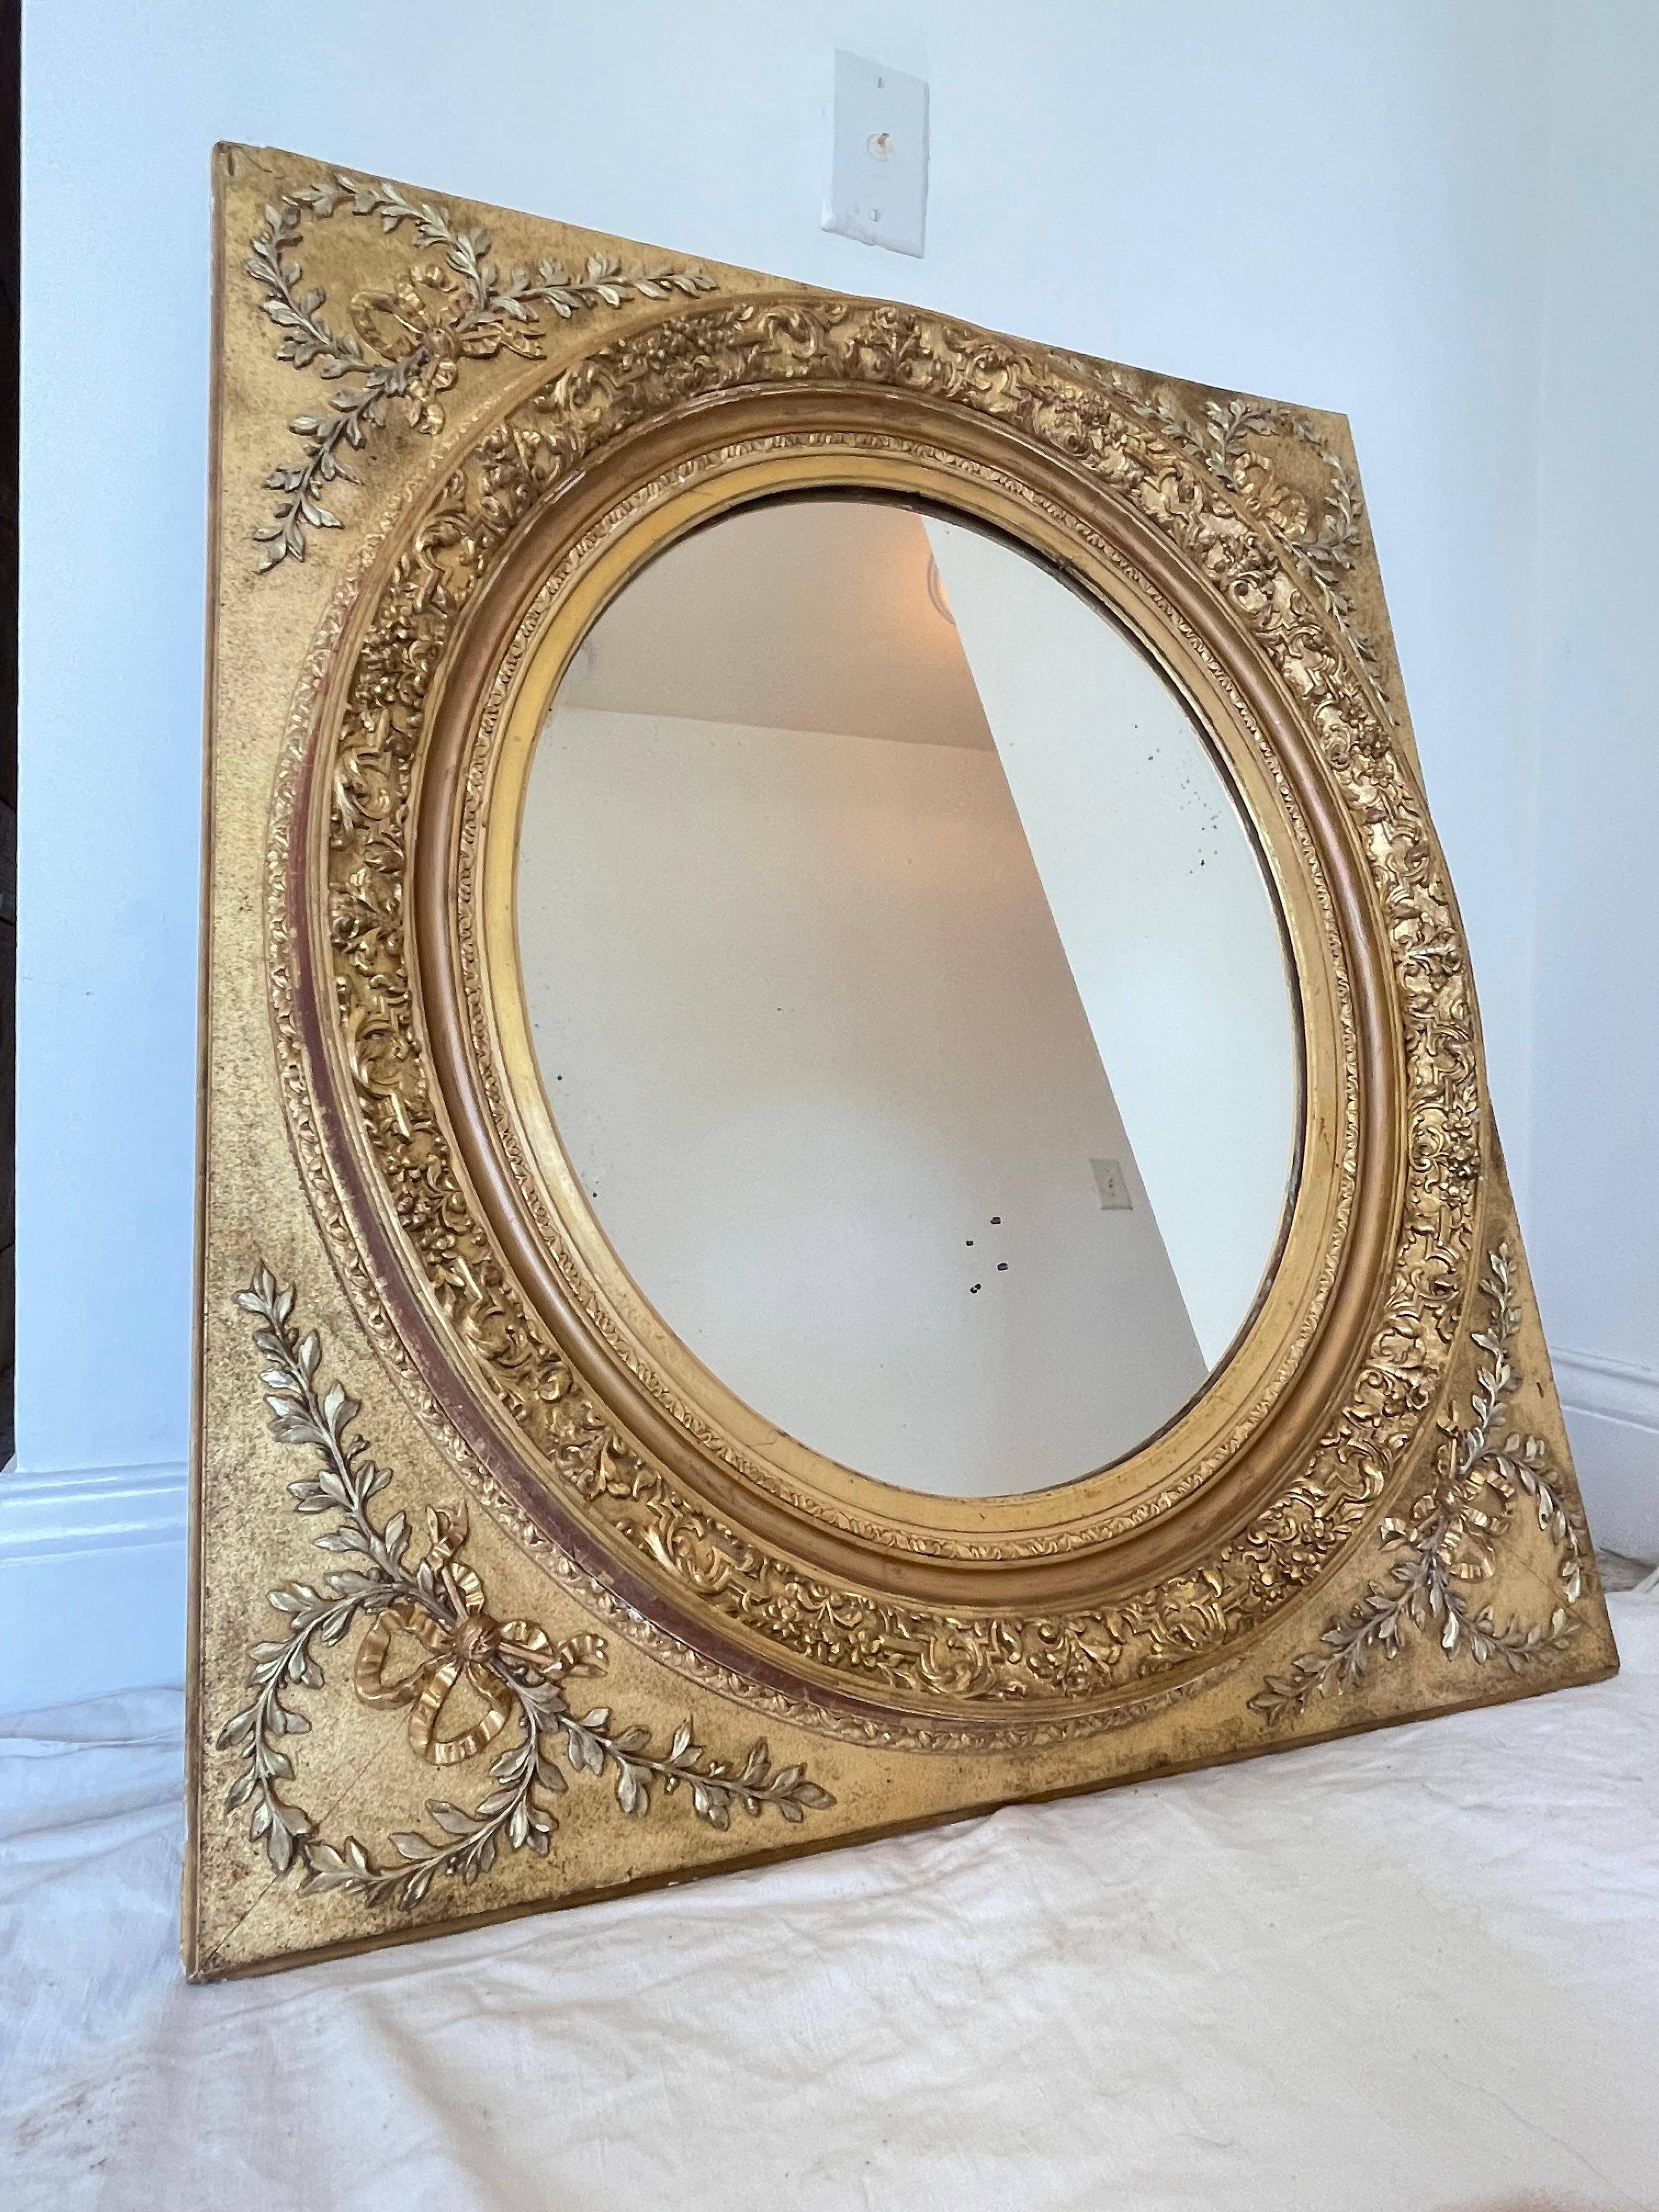 Joli miroir en bois doré de l'époque de Napoléon 3. Miroir en forme de médaillon avec feuillage et ruban aux angles. Autour du miroir ovale au mercure, des frises richement garnies de guirlandes de fleurs.